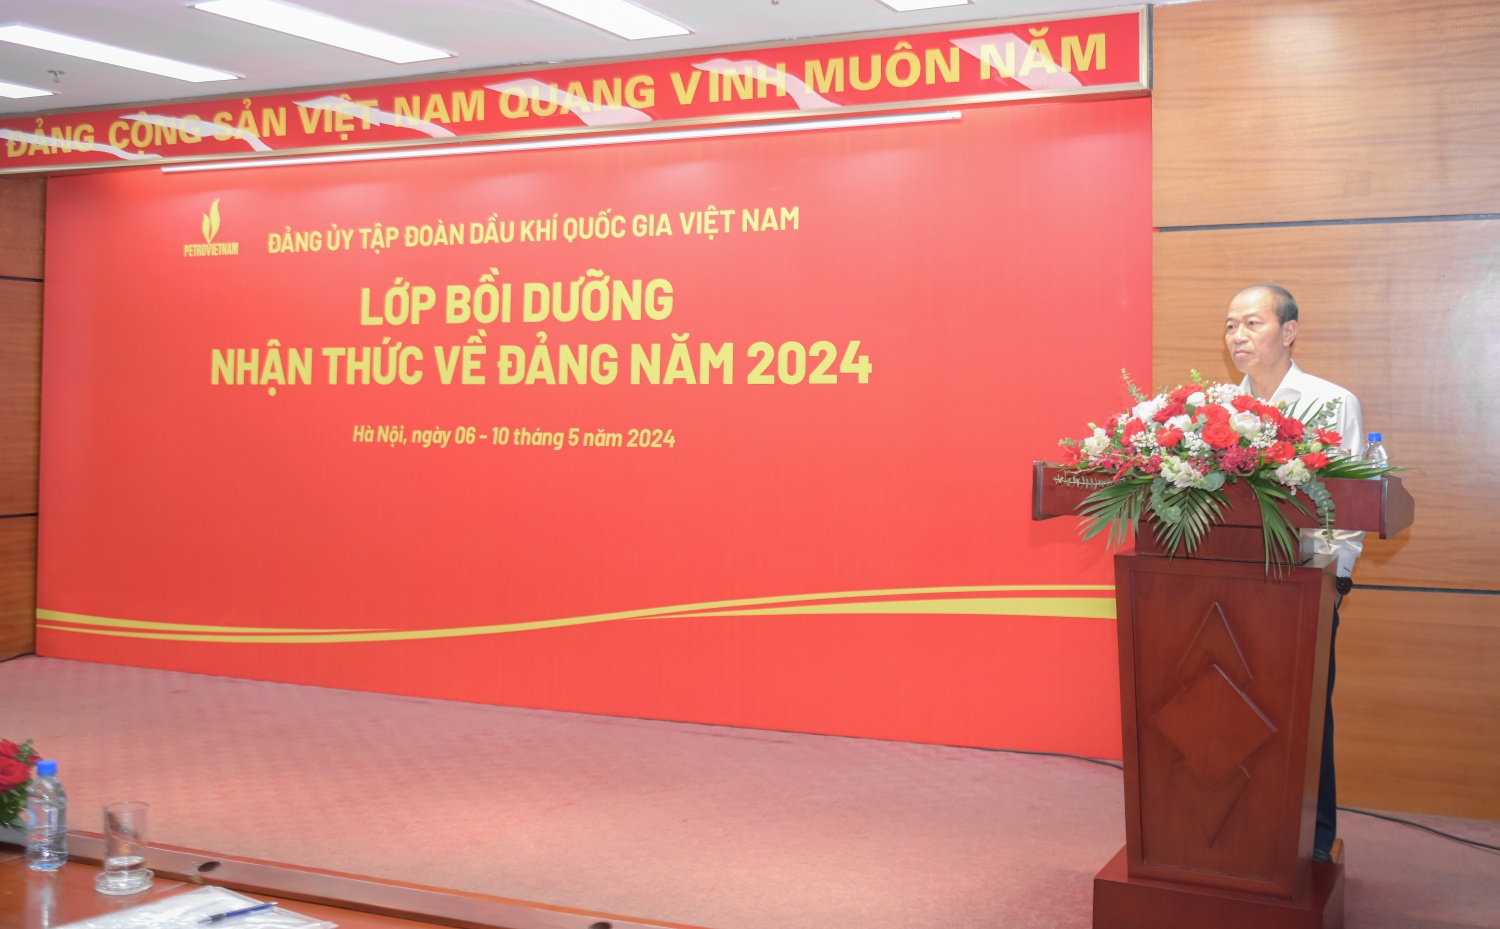 Petrovietnam khai giảng Lớp bồi dưỡng nhận thức về Đảng năm 2024 (lần thứ 2) khu vực Hà Nội